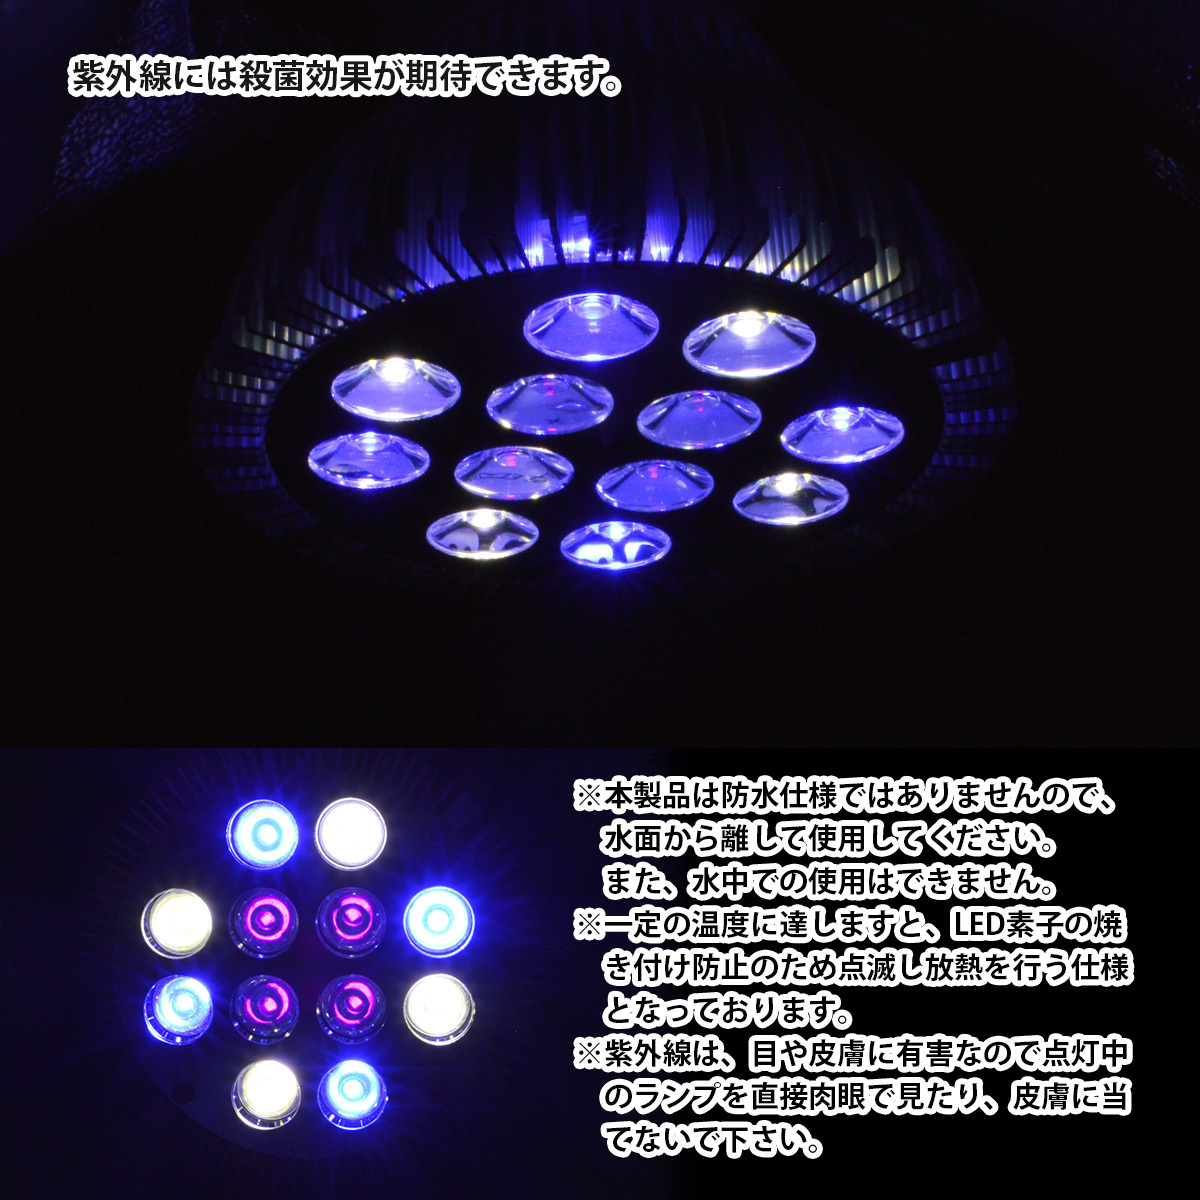 [青4/白4/紫外線4] 24W(2W×12) 電球 E26 口金 水槽 用 照明 植物育成 スポット ライト 12LED アクアリウム 電球 水草